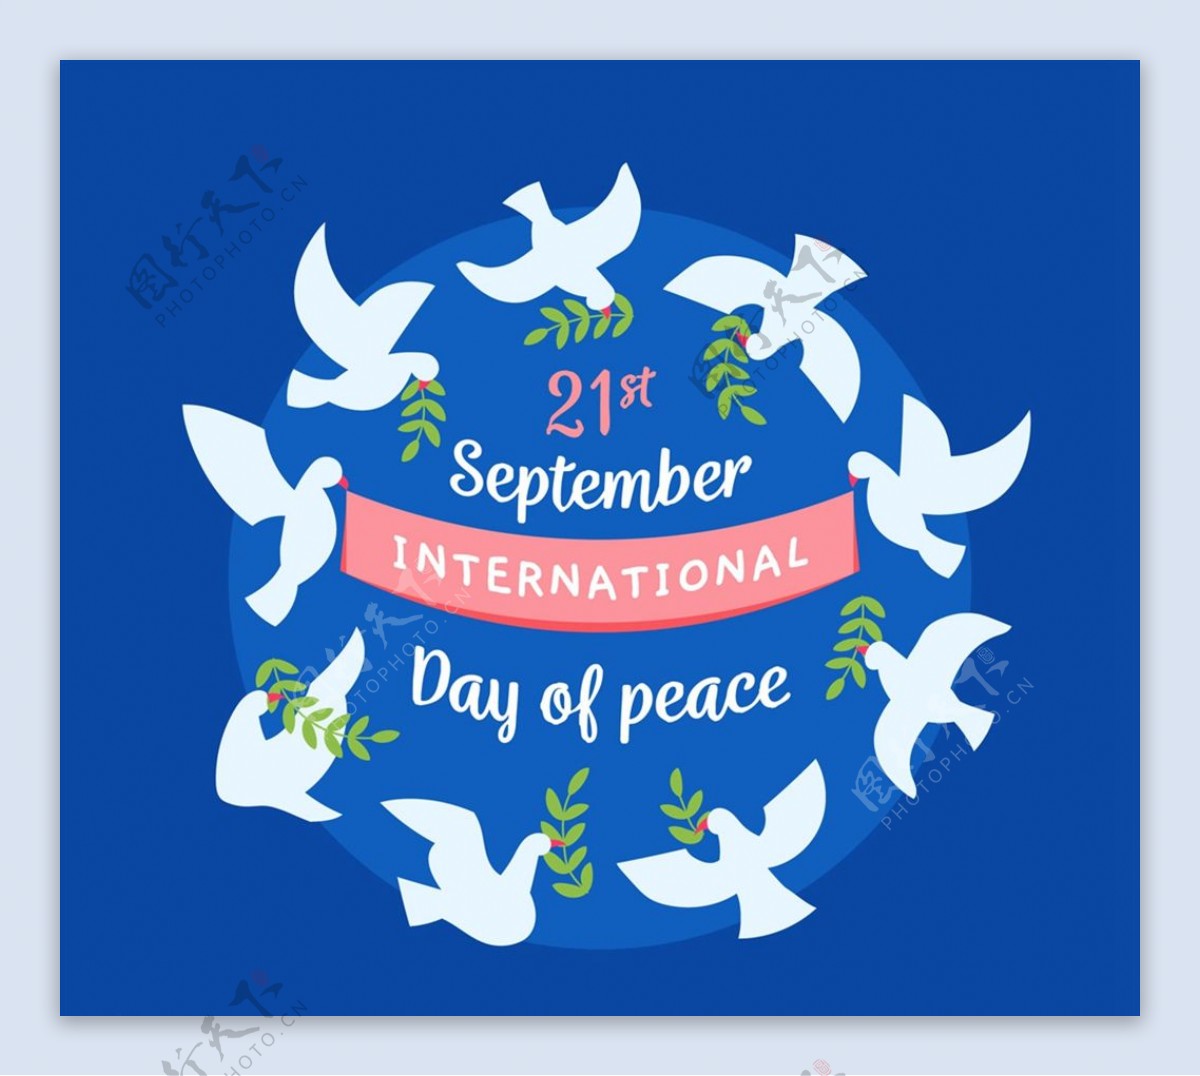 国际和平日白鸽图片